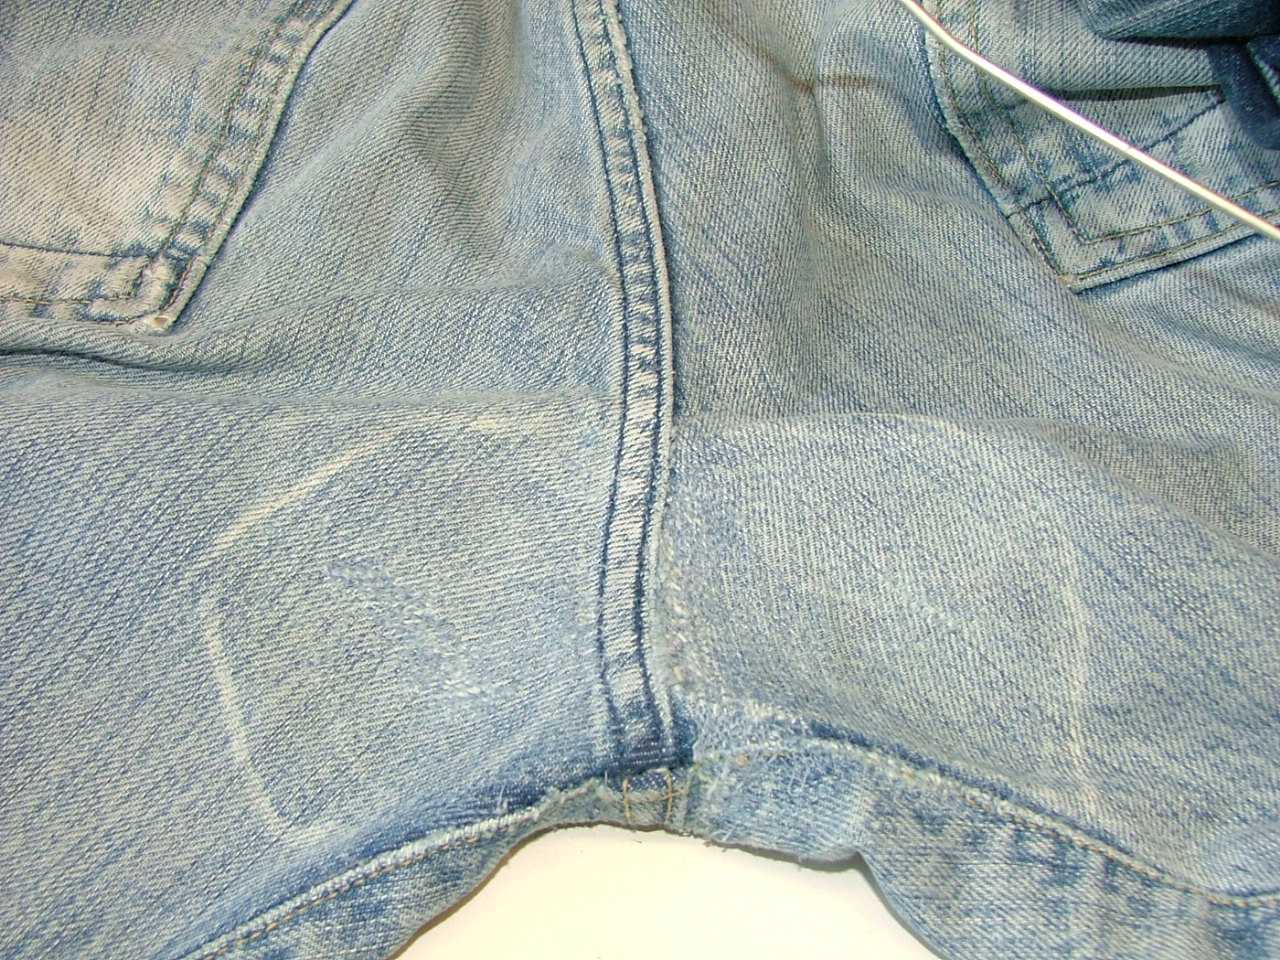 Как заштопать джинсы между ног на машинке и вручную аккуратно и незаметно. обработка низа джинсов брючной лентой